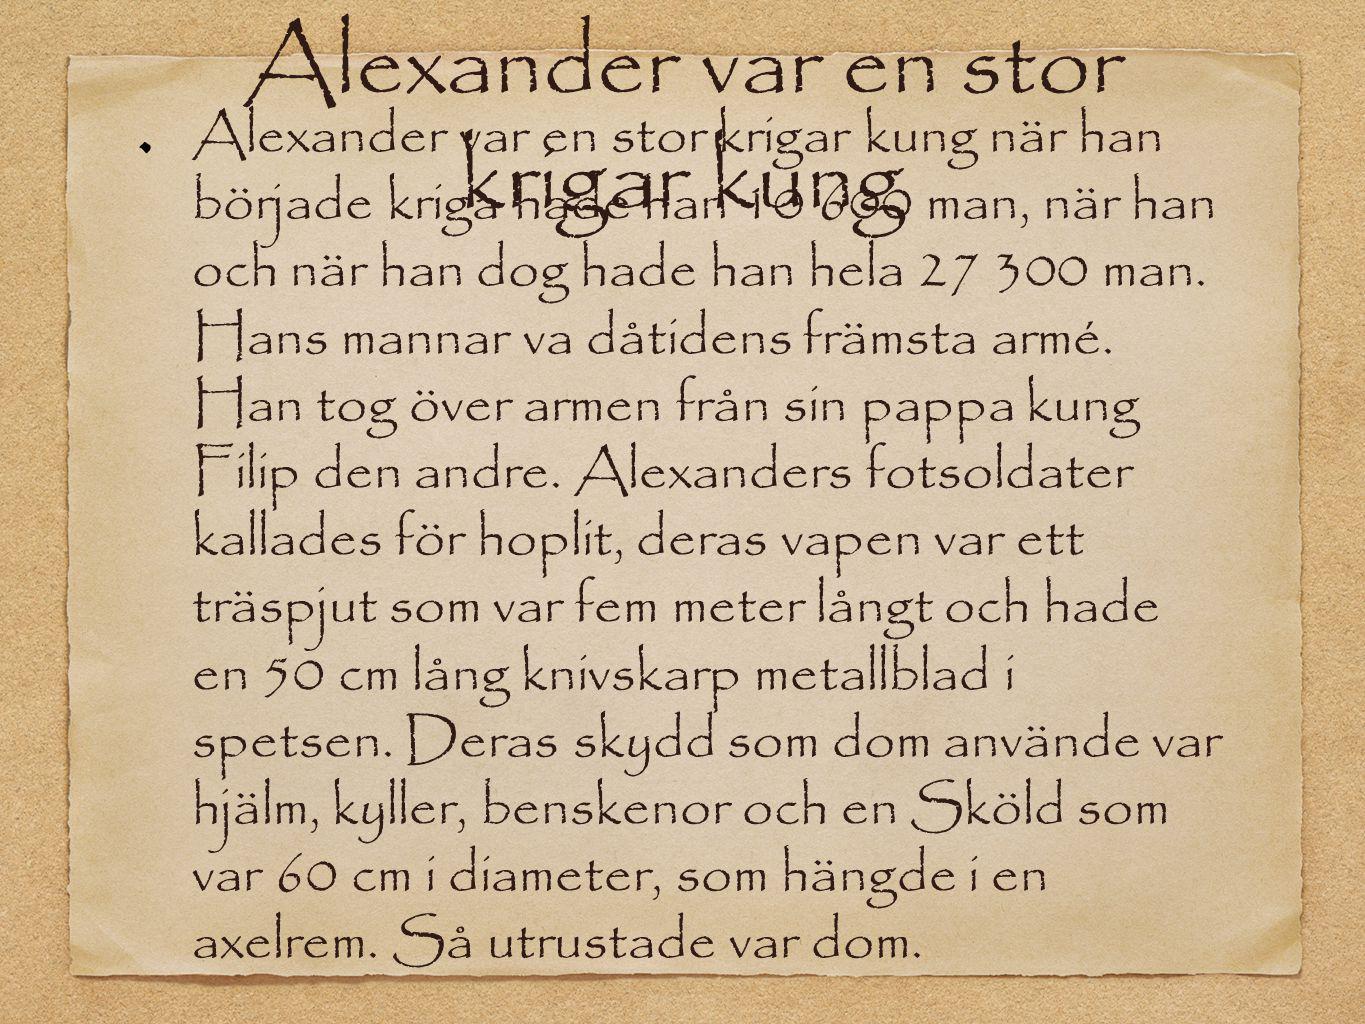 Alexander var en stor krigar kung